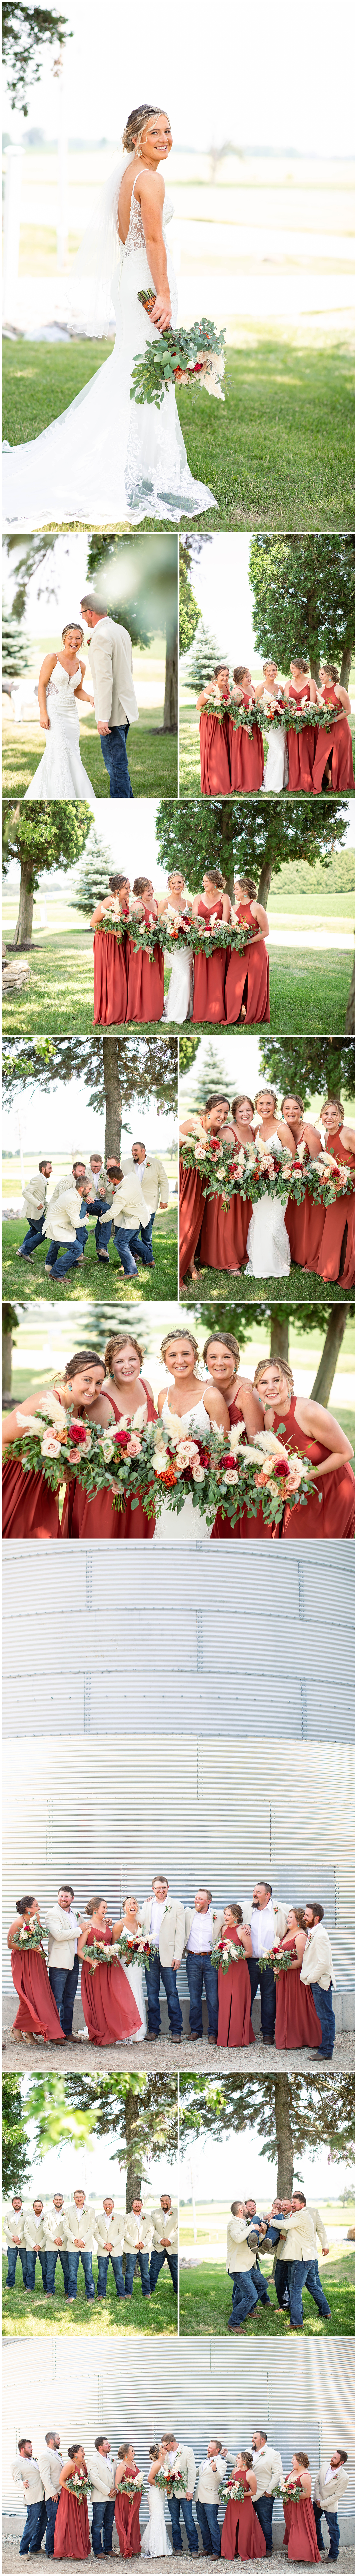 Wisconsin farm wedding party portraits 